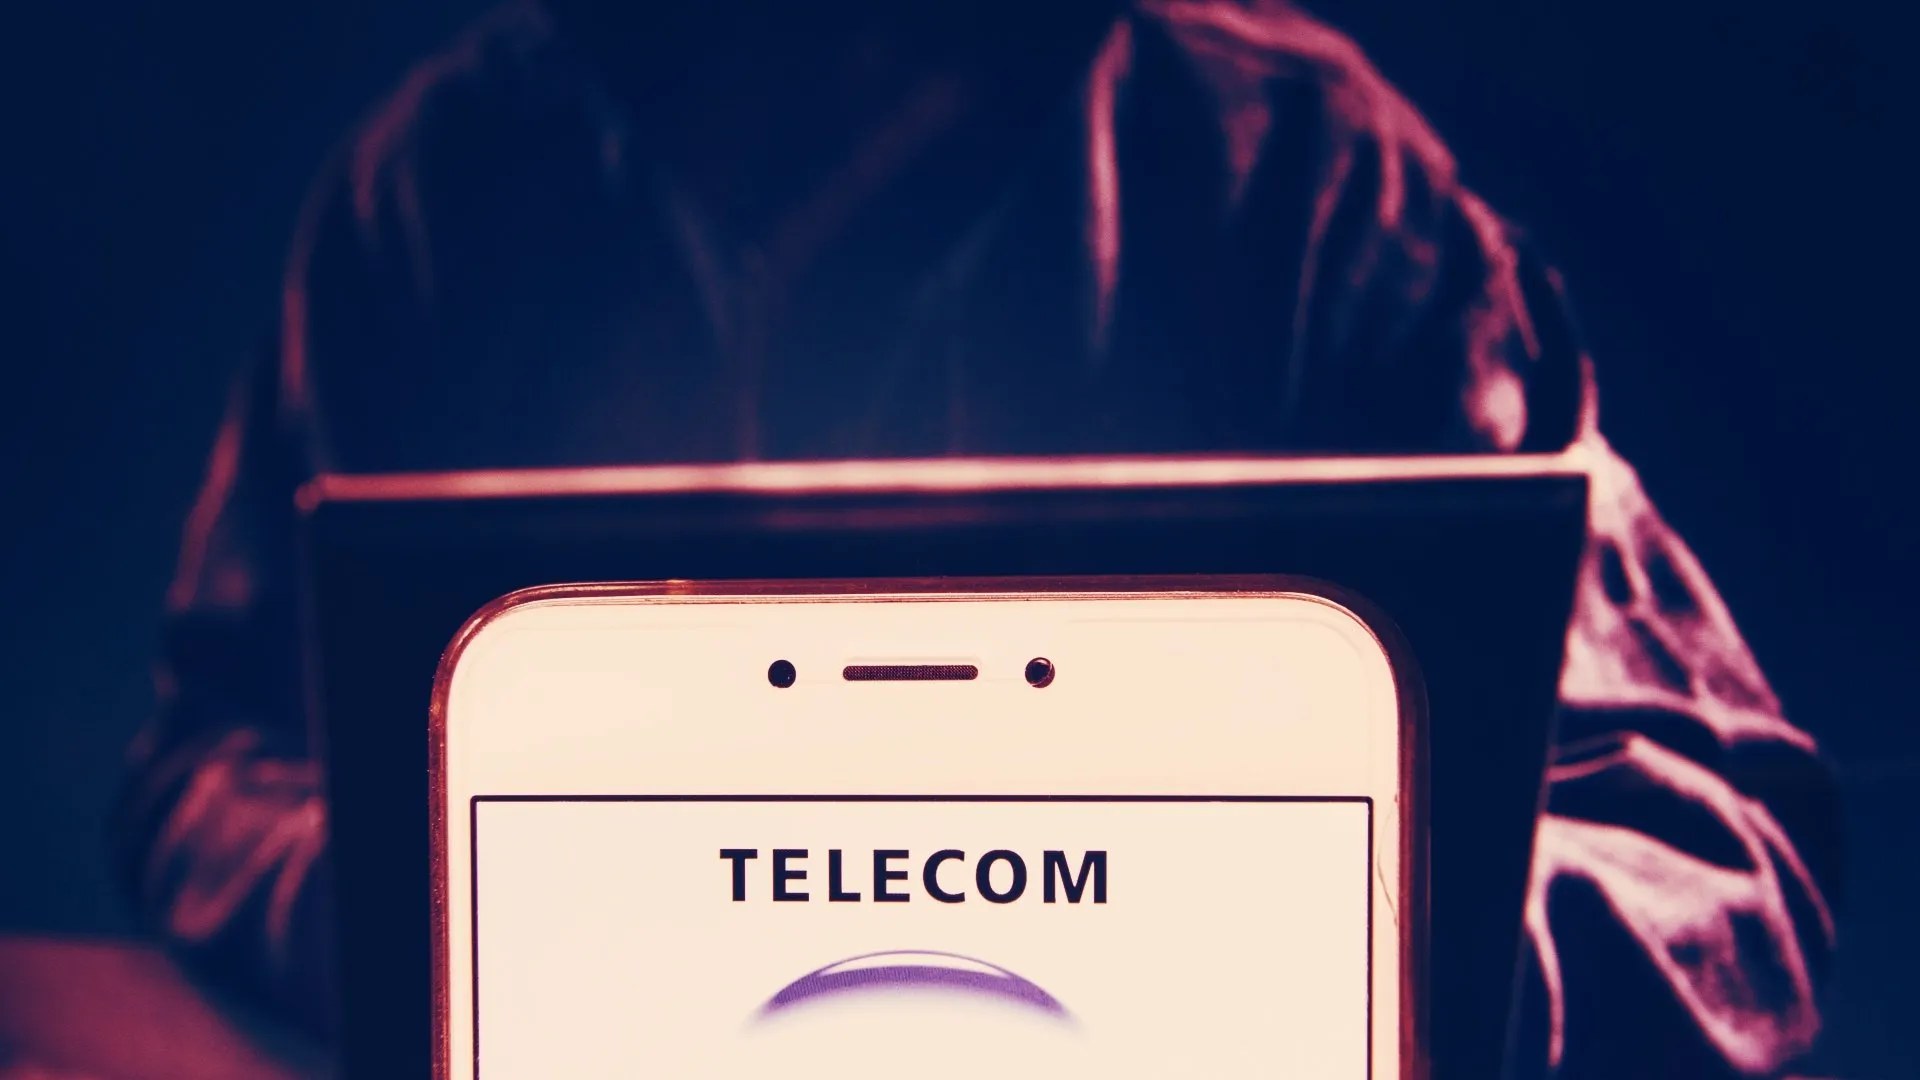 Los hackers han exigido 7,5 millones de dólares en Monero a la mayor empresa de telecomunicaciones de Argentina, Telecom Argentina S.A. (Imagen: Shutterstock)